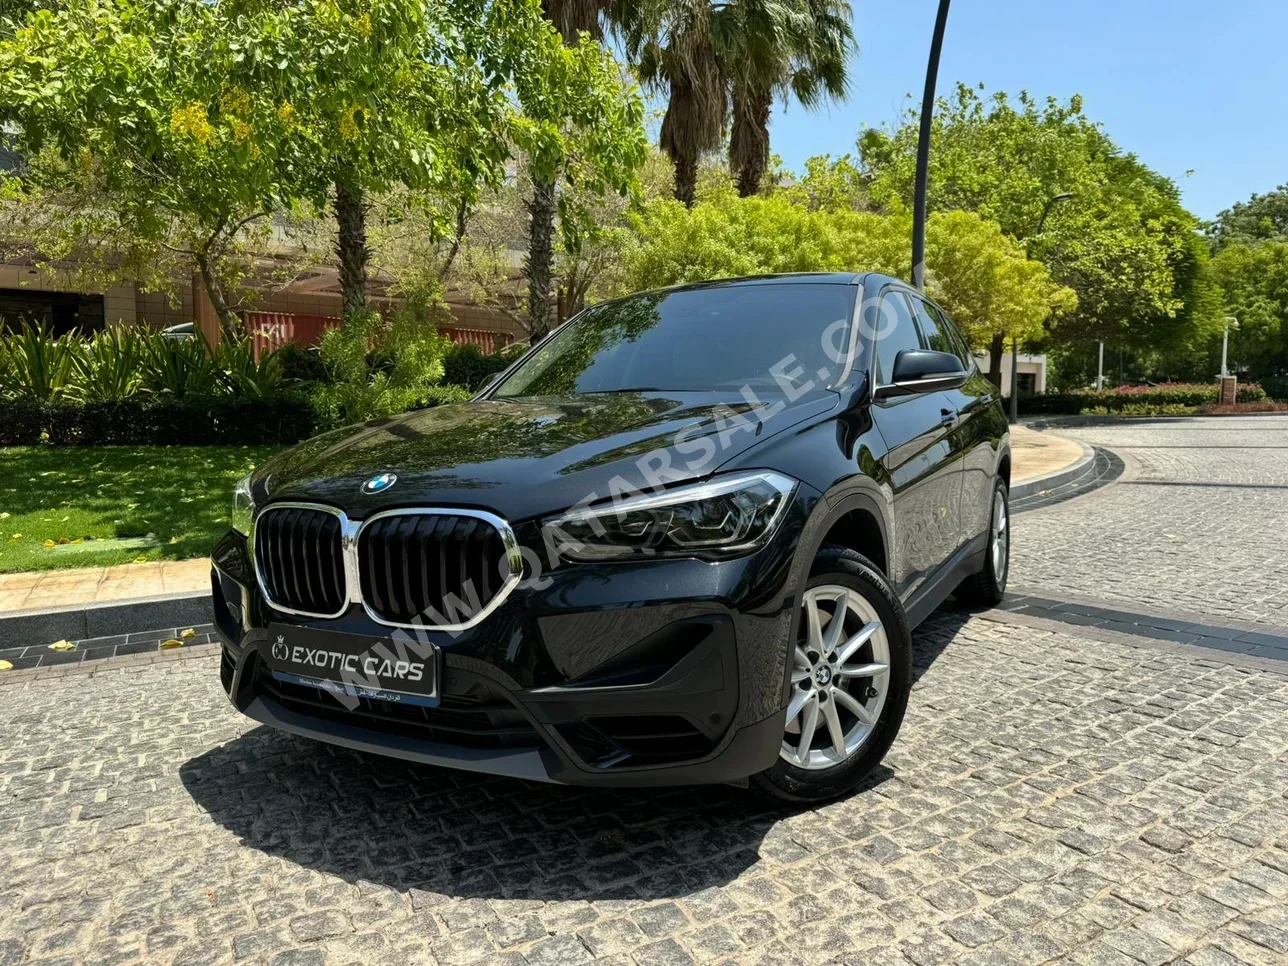 BMW  X-Series  X1  2021  Automatic  49,000 Km  4 Cylinder  Four Wheel Drive (4WD)  SUV  Black  With Warranty